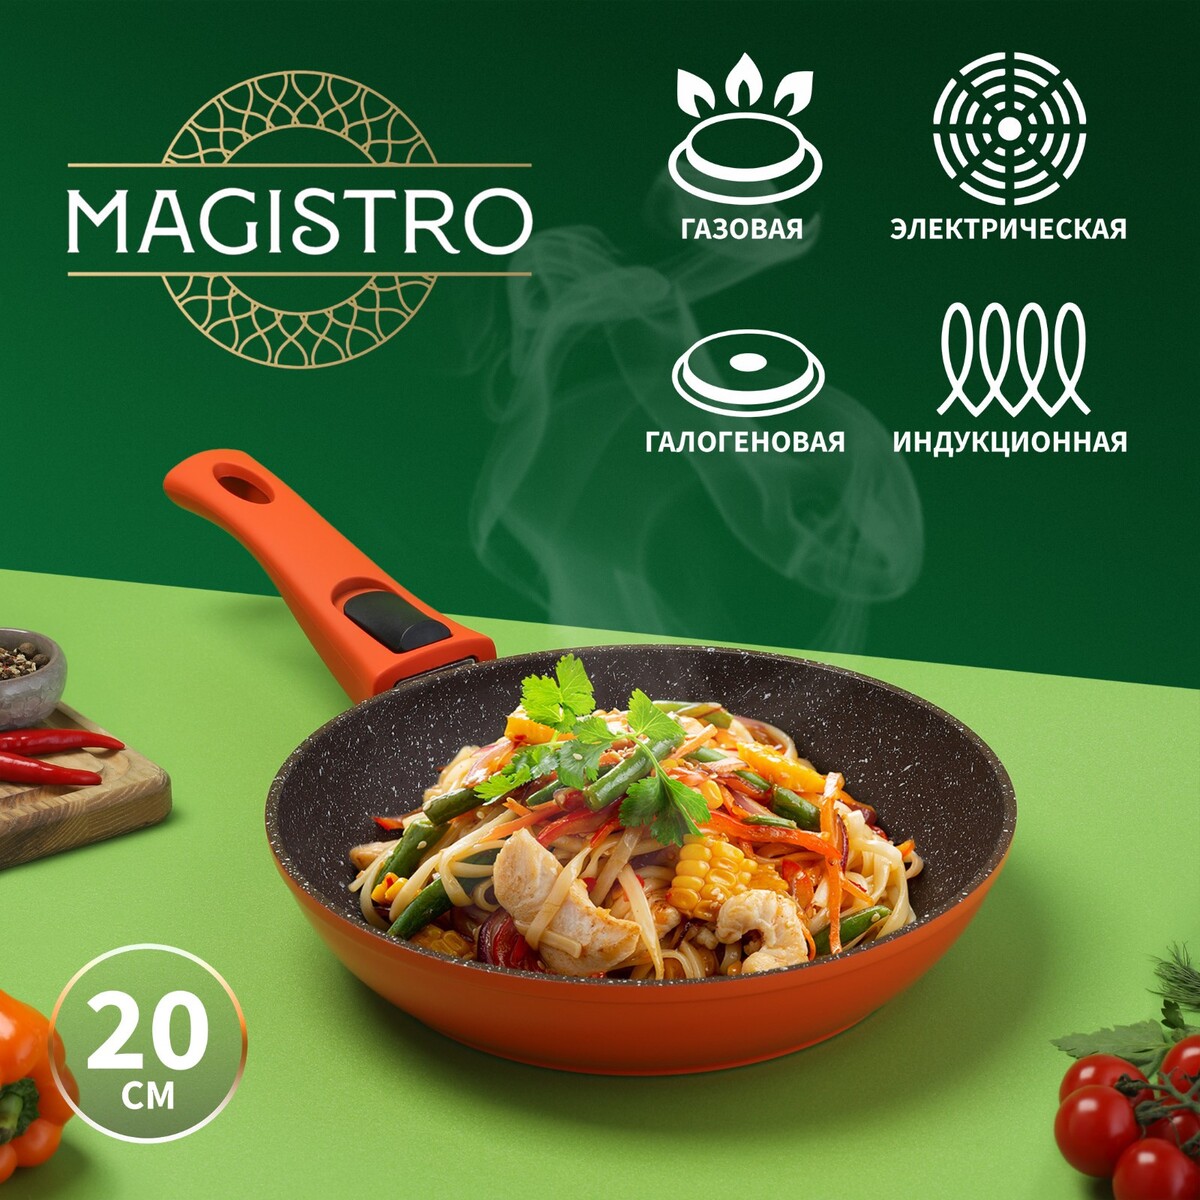 Сковорода magistro terra, d=20 см, съемная ручка soft-touch, антипригарное покрытие, индукция, цвет оранжевый сковорода литая 28см съемная ручка мрамор индукция